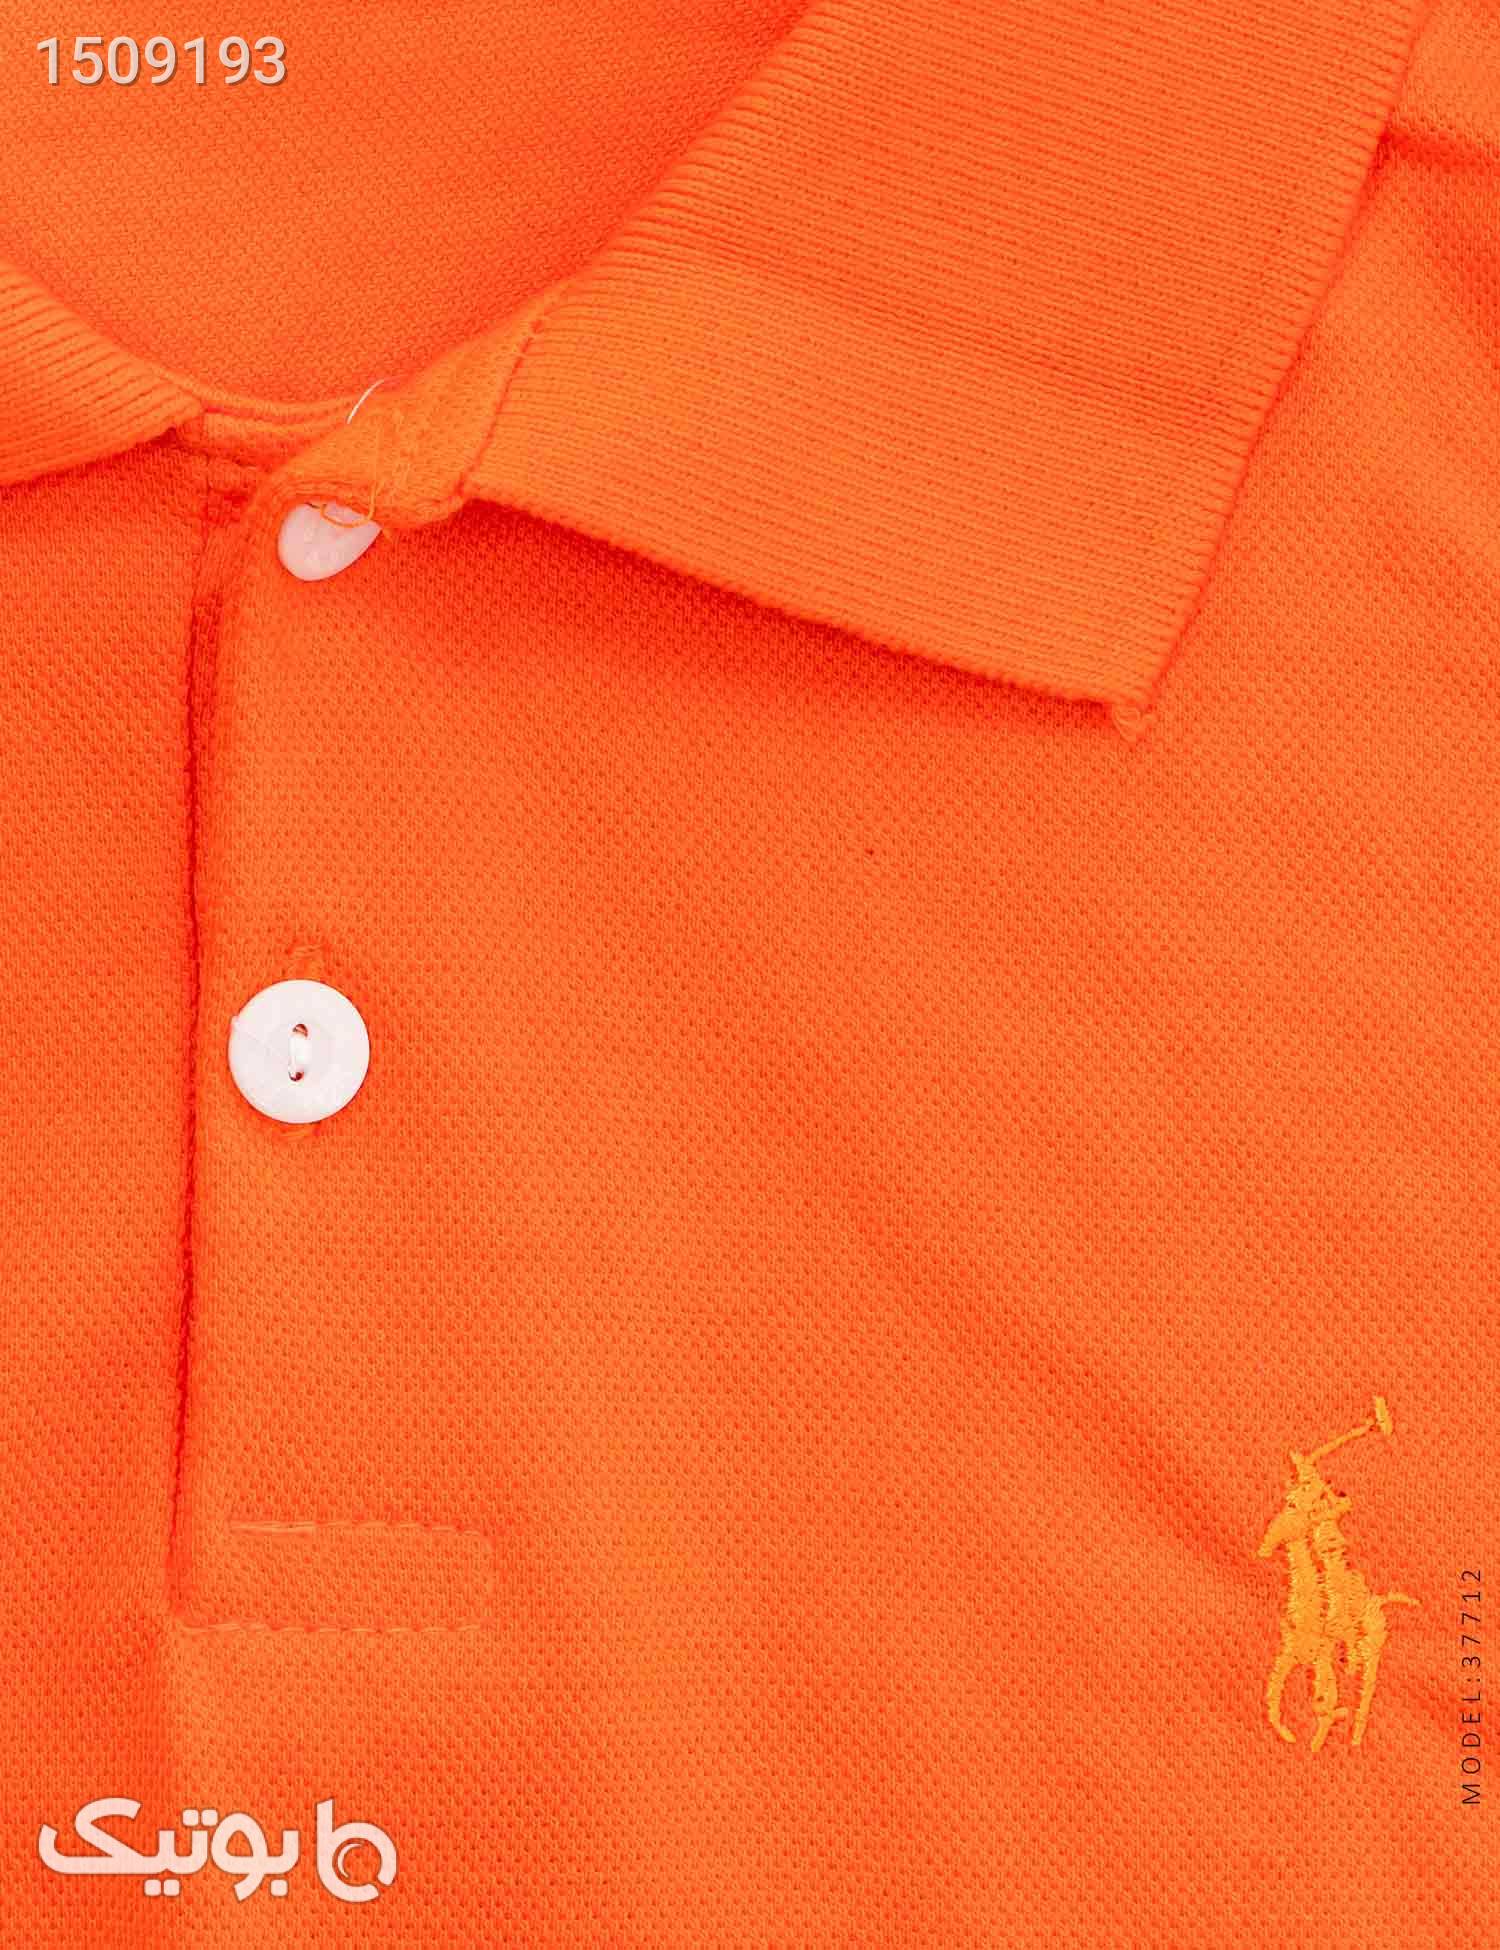 پولوشرت مردانه Polo مدل 37712 نارنجی تی شرت و پولو شرت مردانه